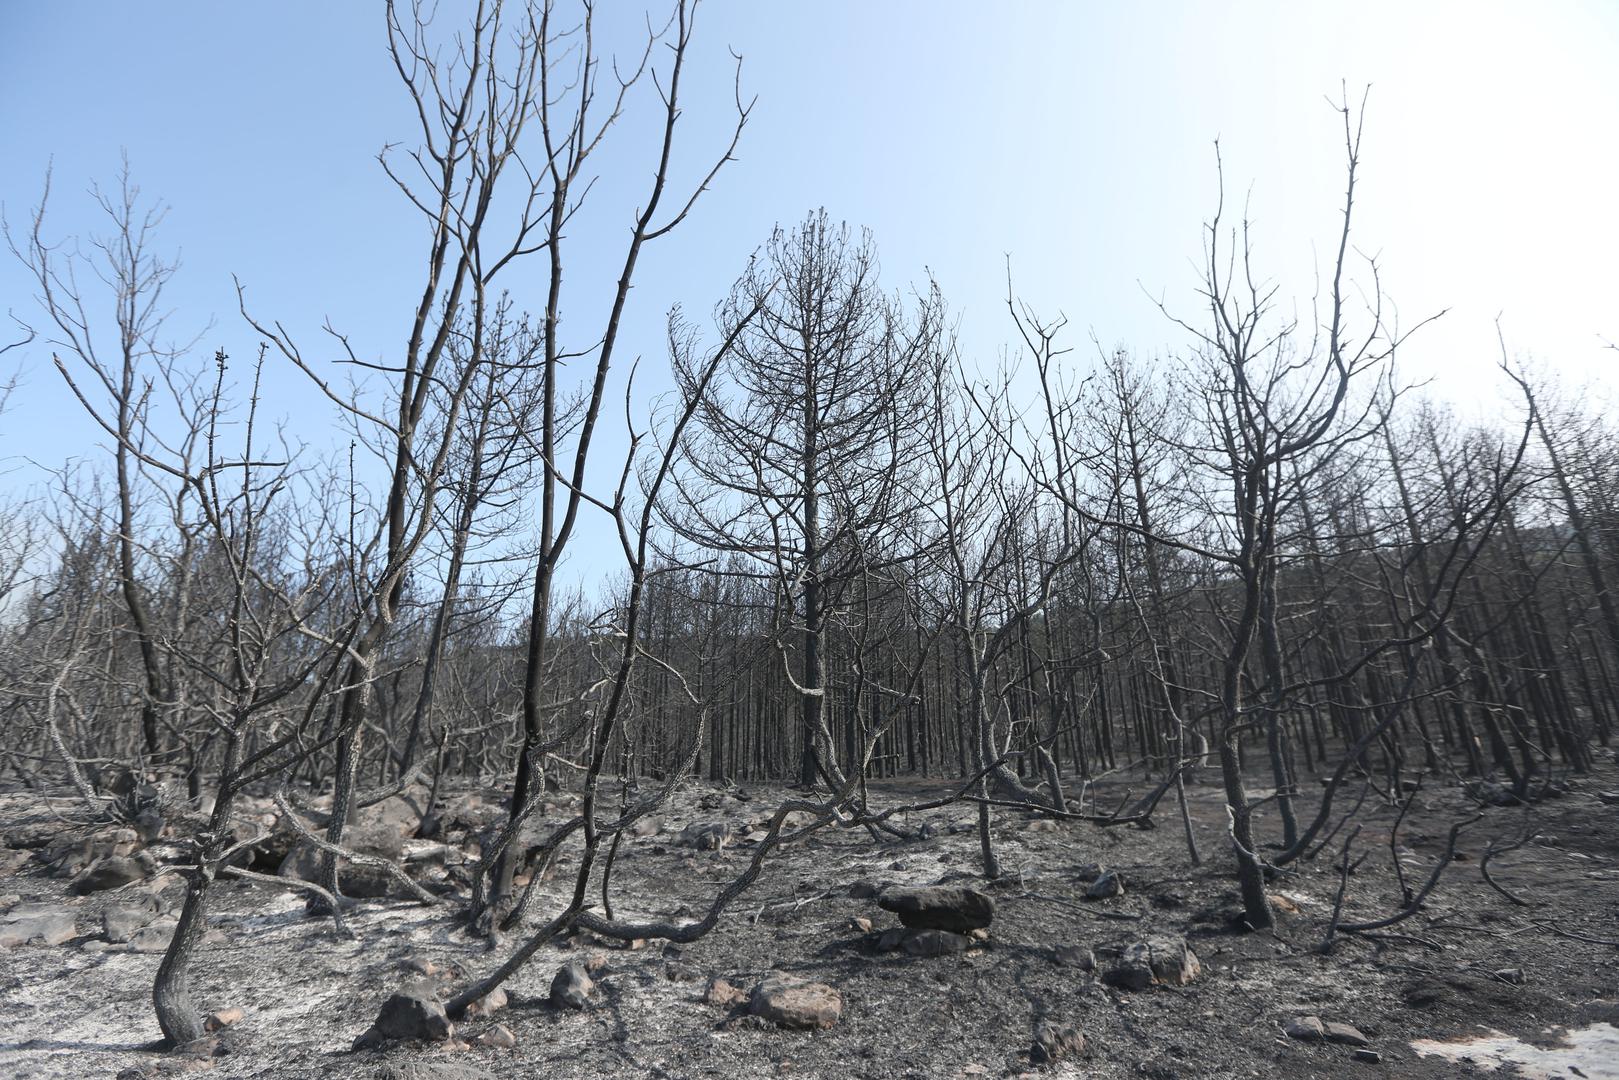 Jučerašnji požar koji je harao drniškim područjem prošao je i kroz mjesto Lišnjak blizu Drniša. 